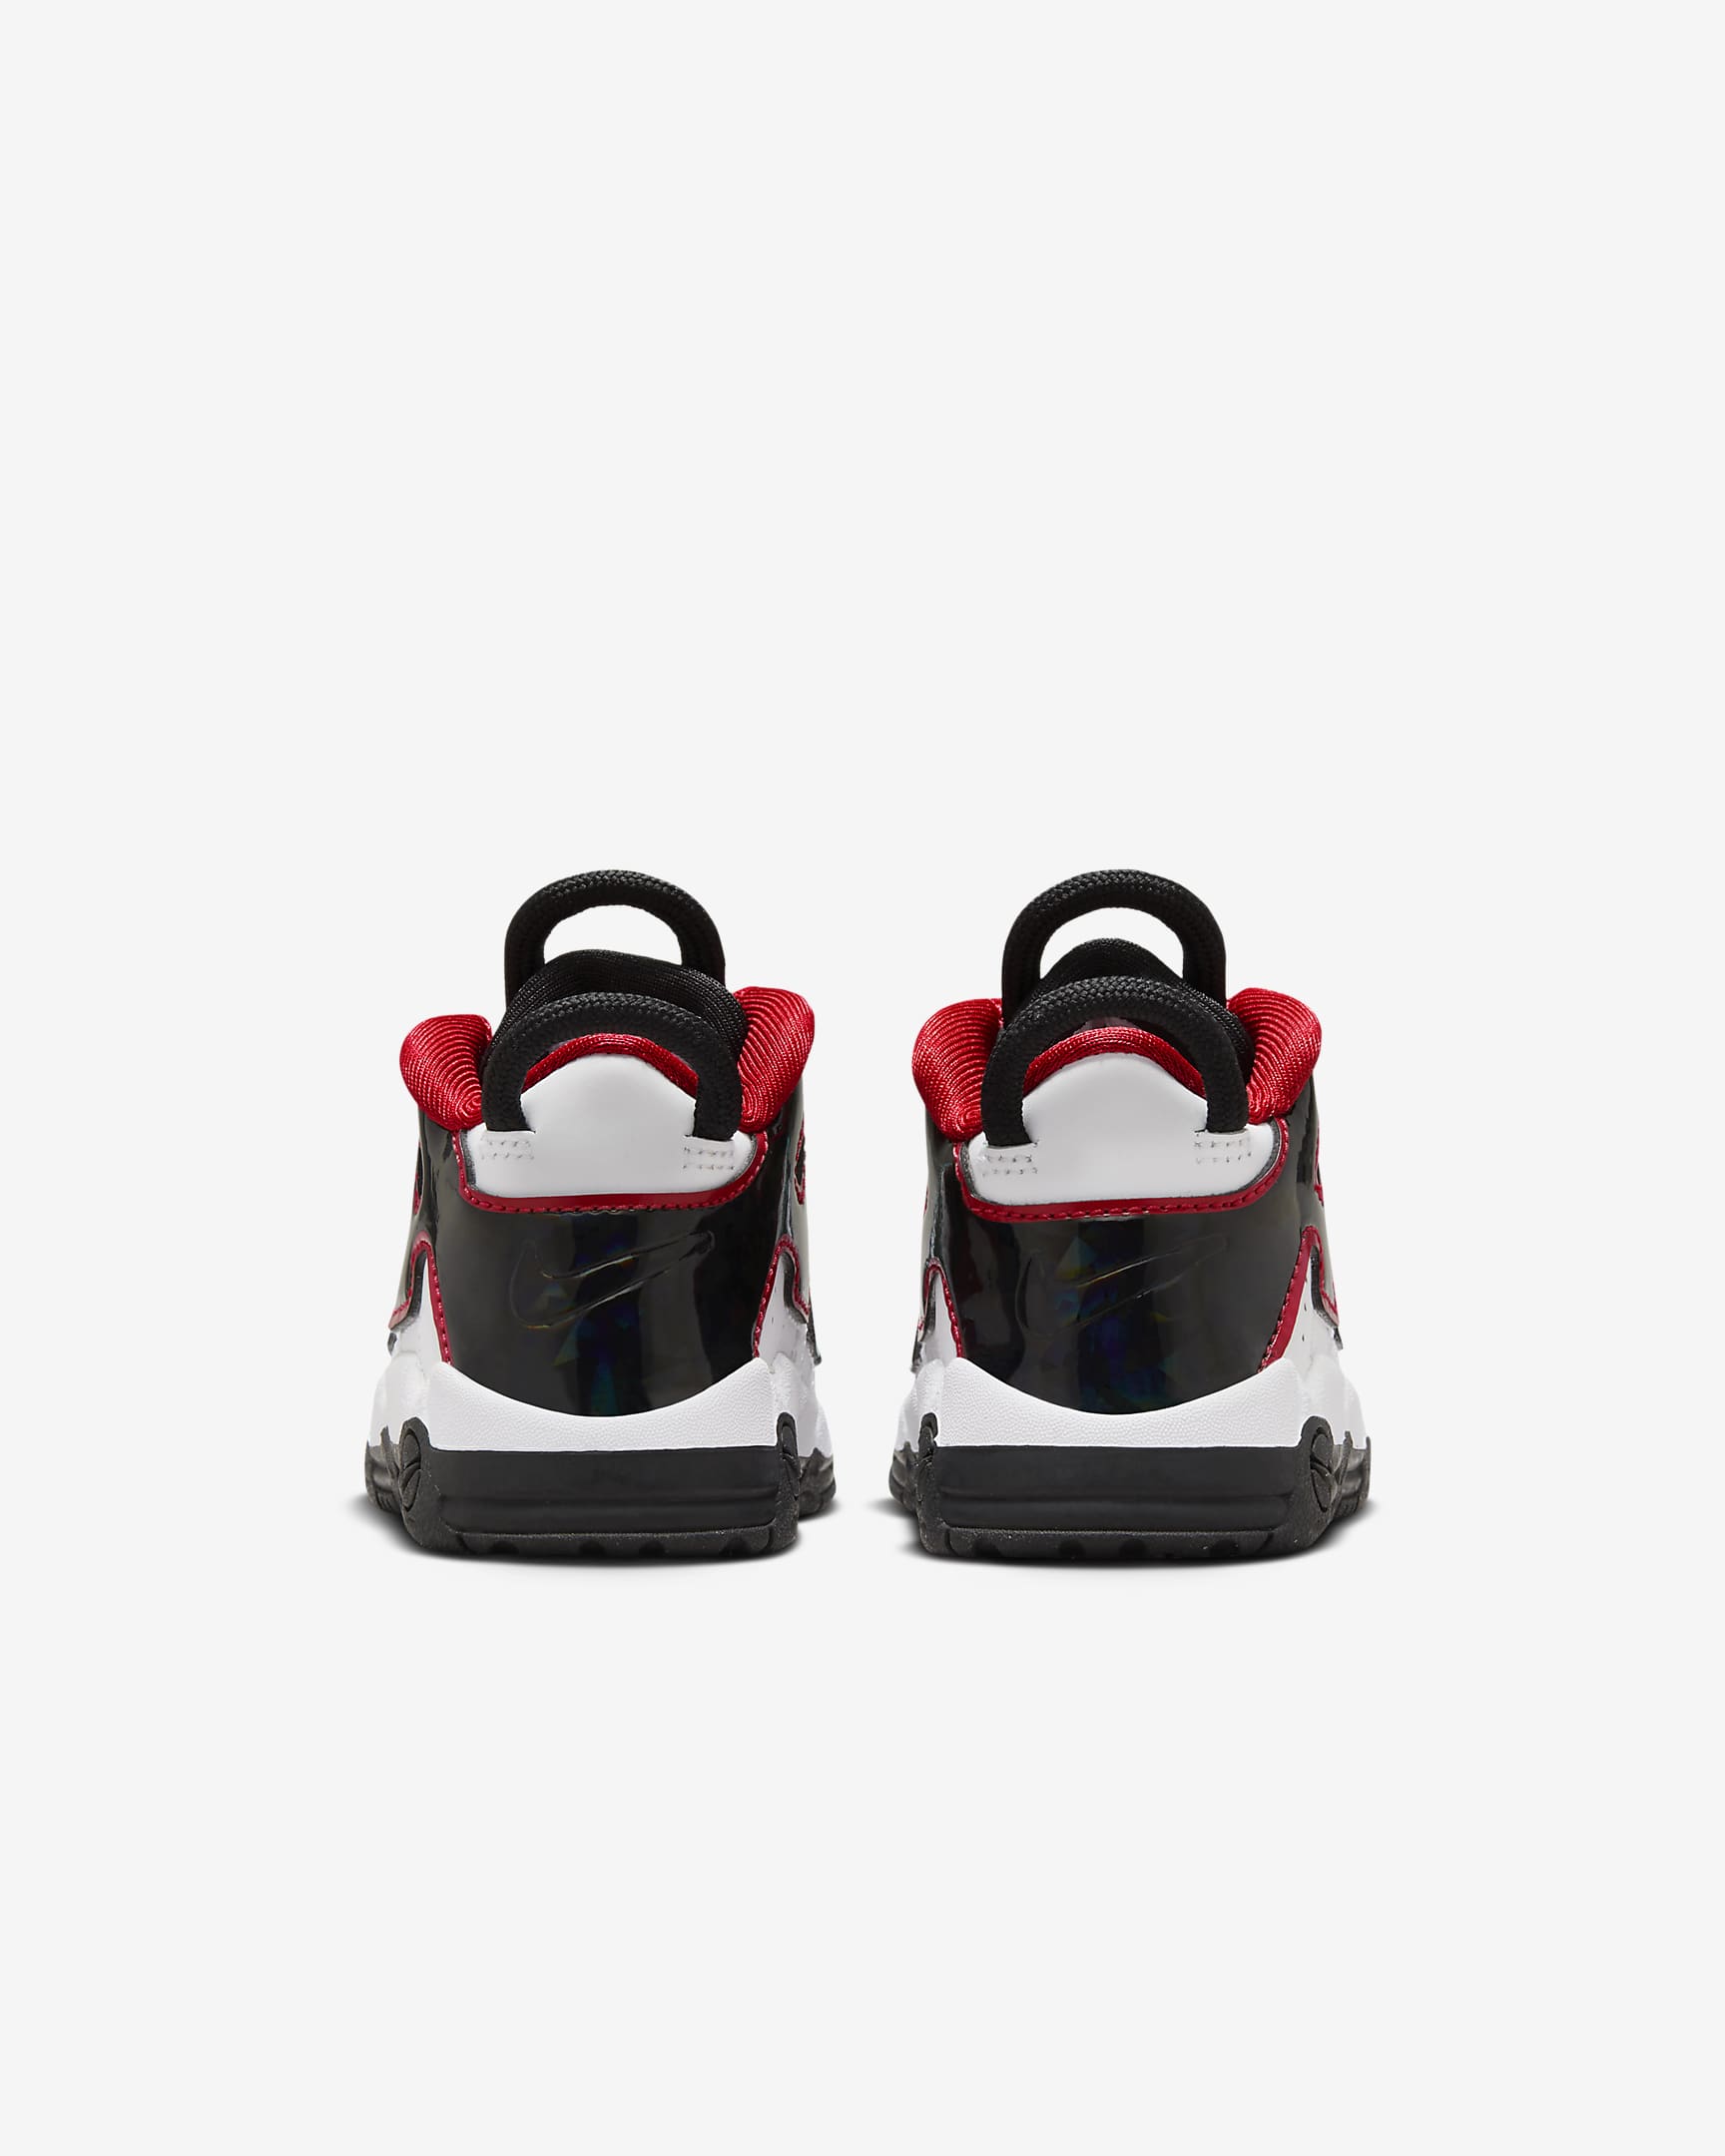 Calzado infantil Nike Air More Uptempo CL. Nike.com